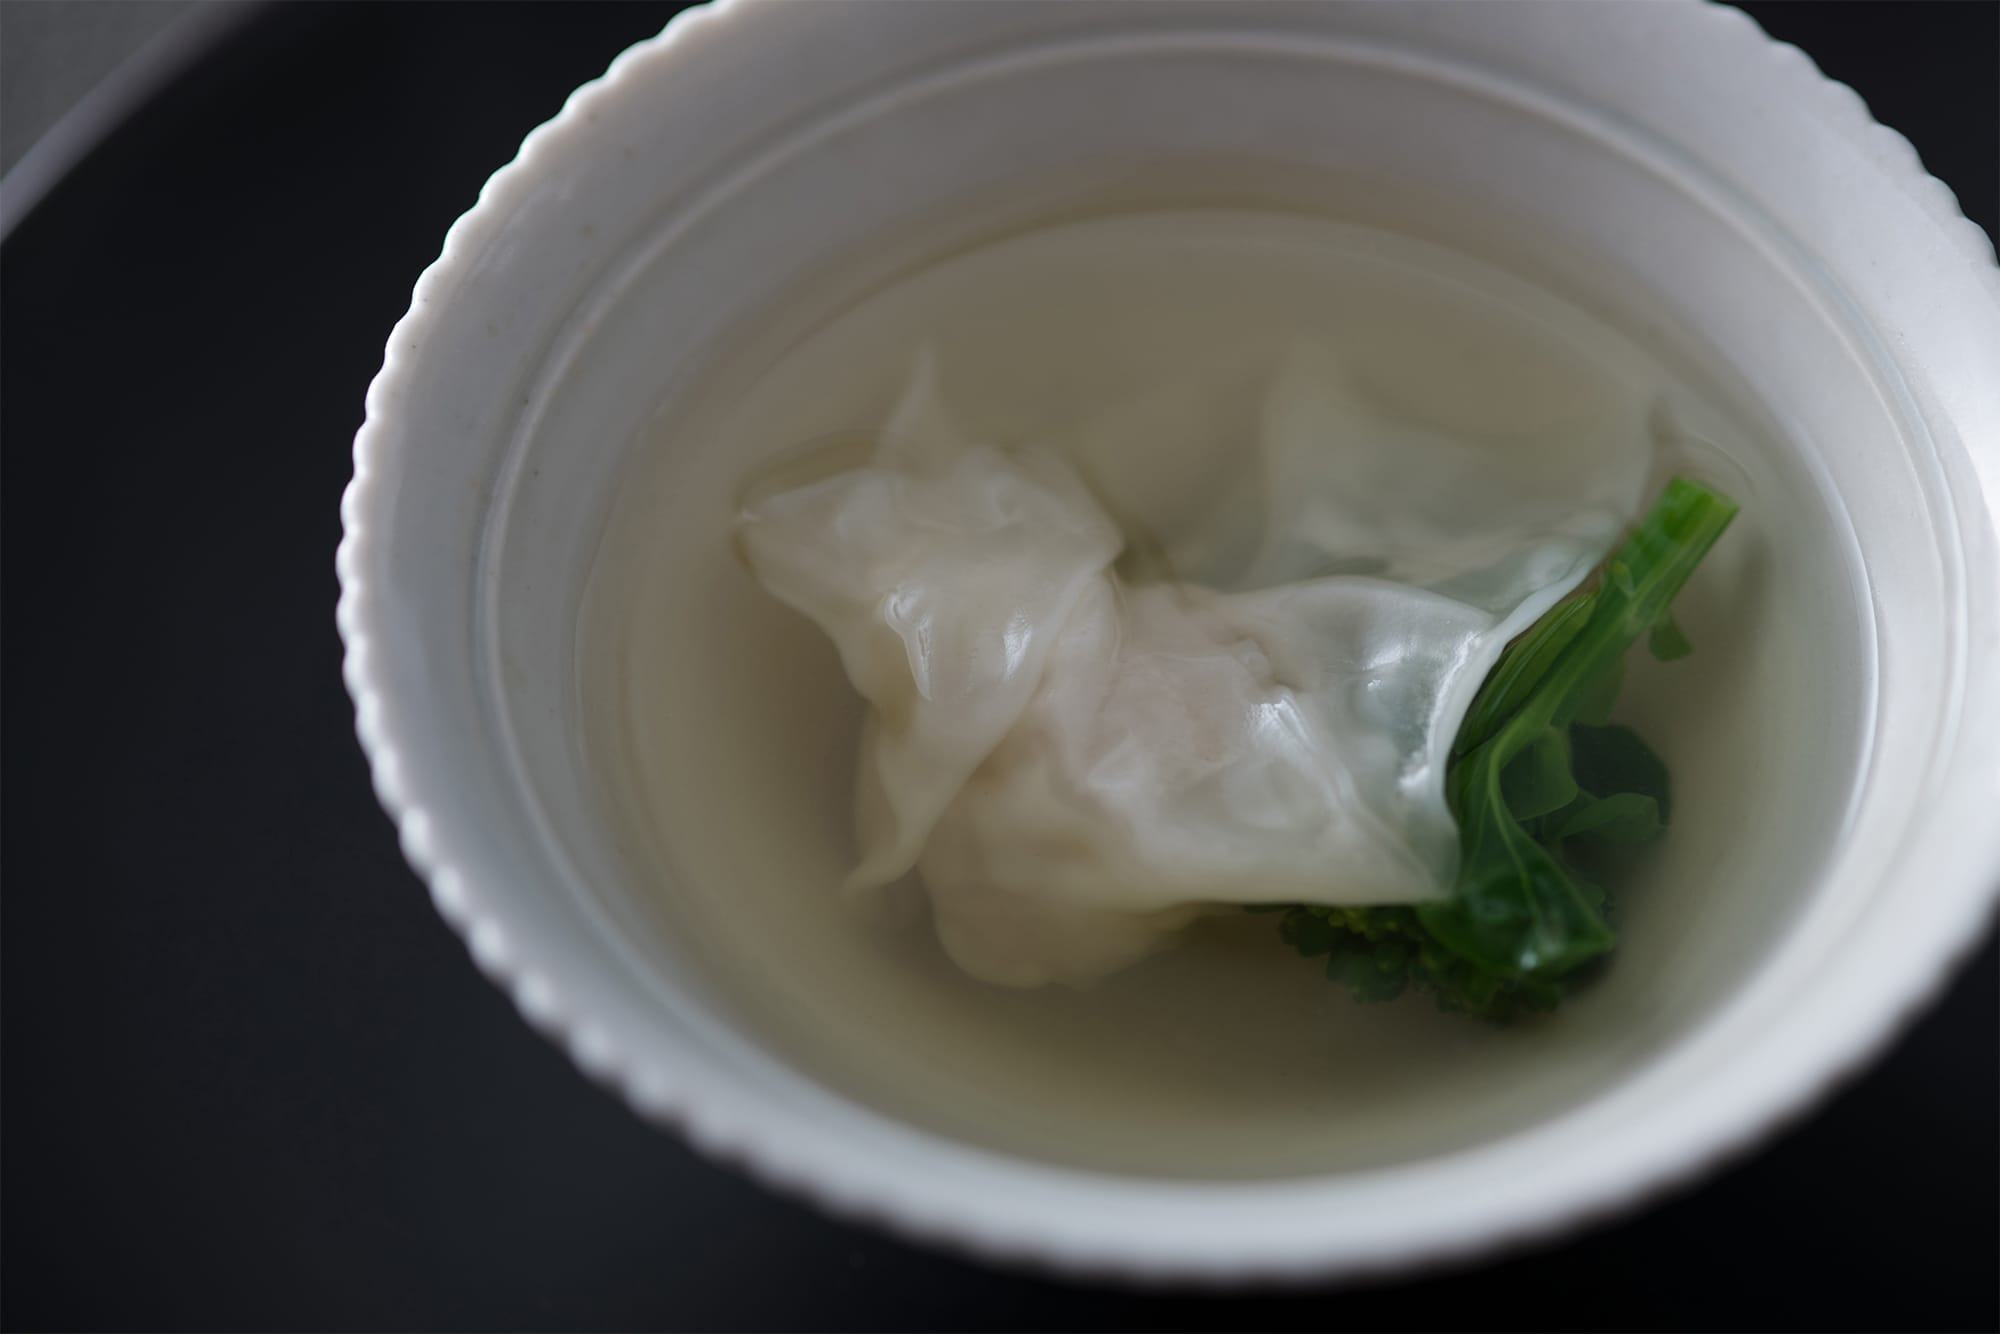 「茶禅華」のシグネチャー料理のひとつ「雉のスープ」。まるで日本料理の椀もののようにクリアなスープの奥に、深い味わいと哲学が隠れている。